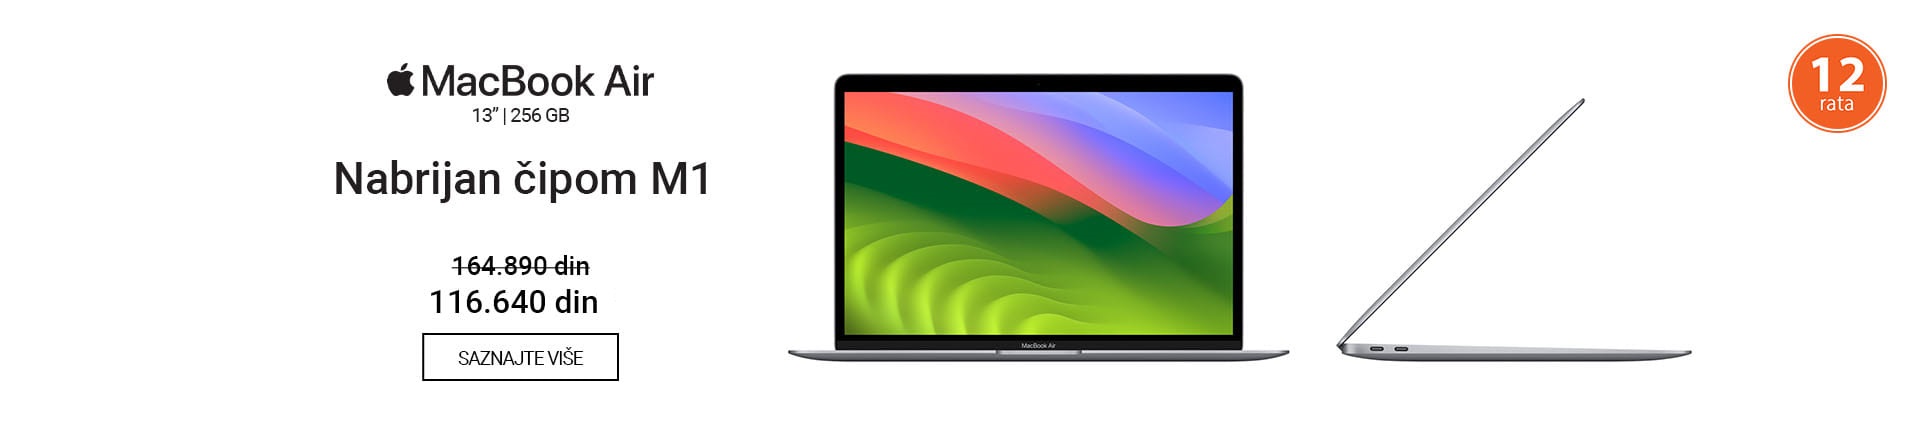 RS~Apple MacBook Air 13 M1 BF1 MOBILE 380 X 436.jpg